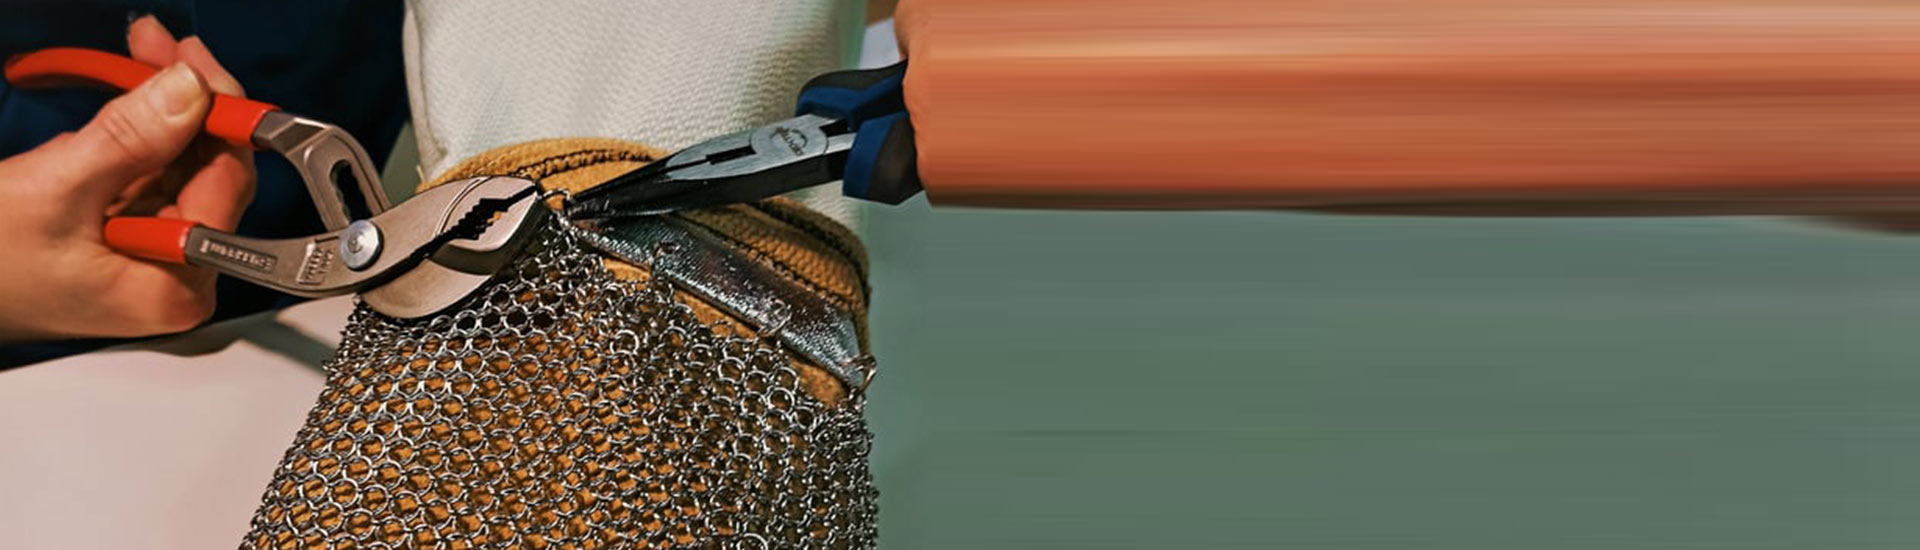 Explorez notre gamme complète d’Équipements de protection thermique, bénéficiant d’une traçabilité totale, de la conception à la livraison